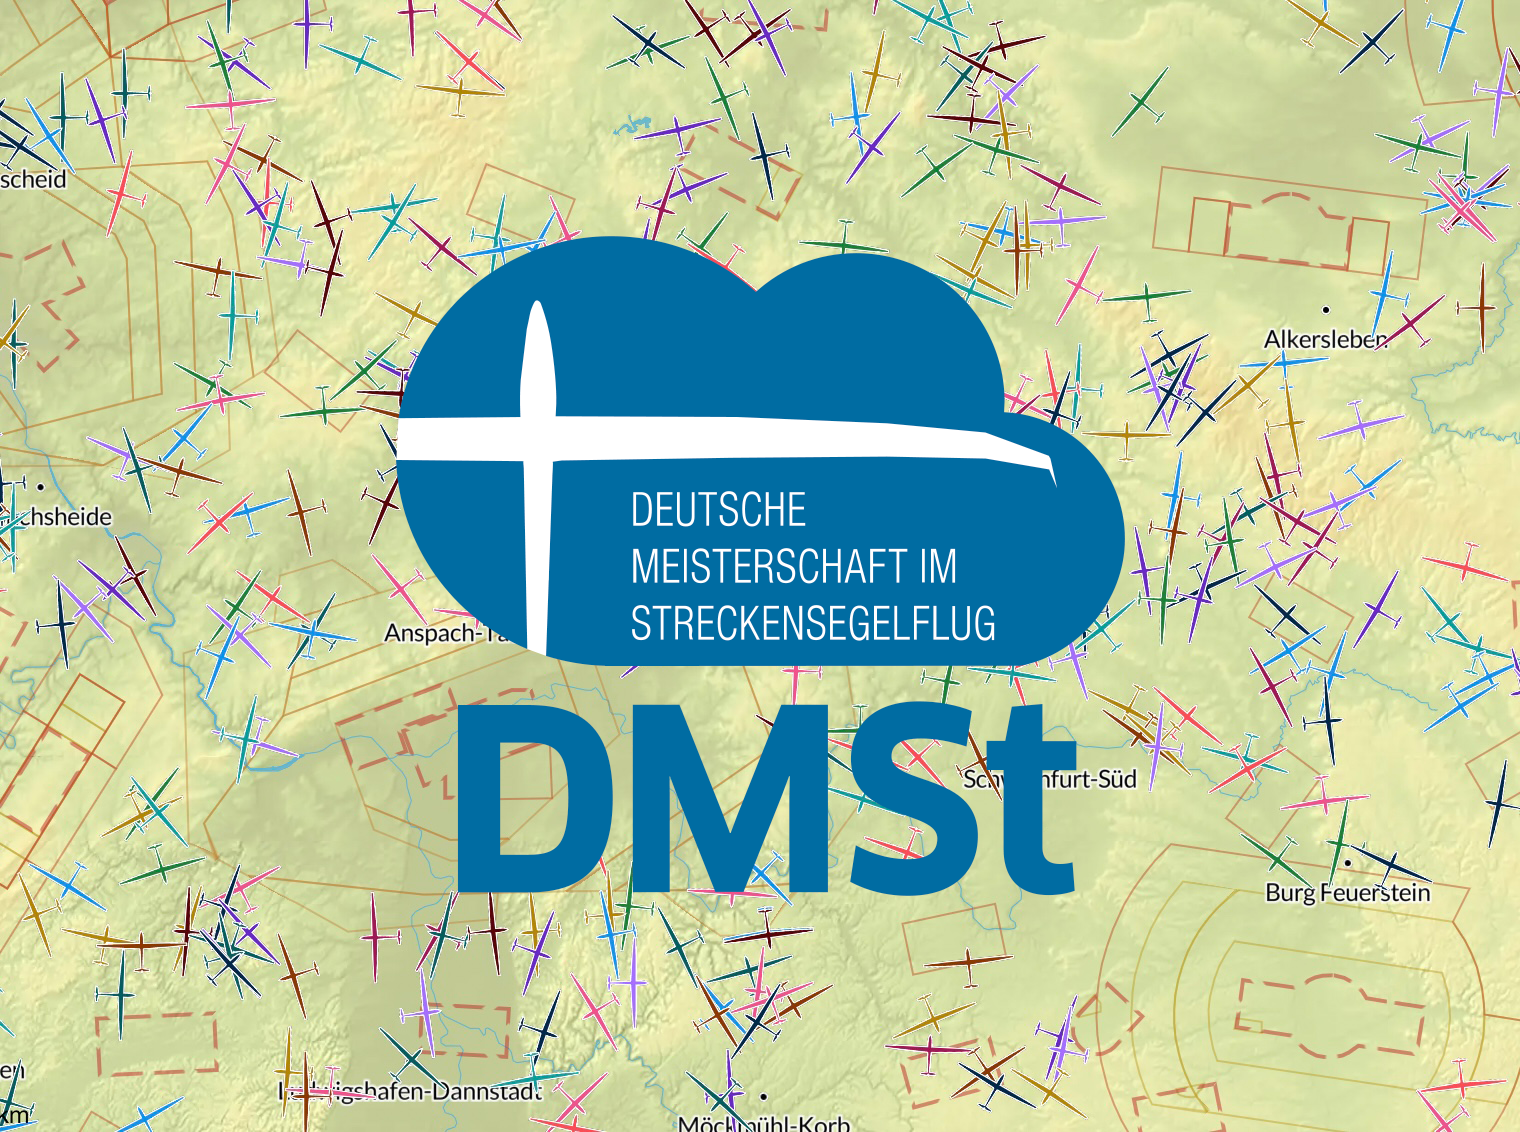 DMSt-Bundesliga startet am 29. April